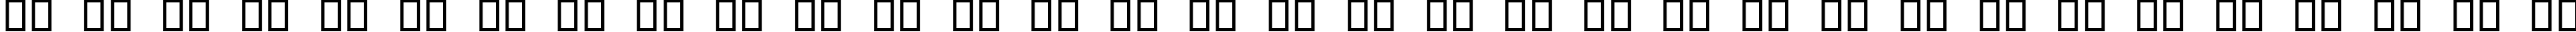 Пример написания русского алфавита шрифтом Cactus Sandwich Plain FM